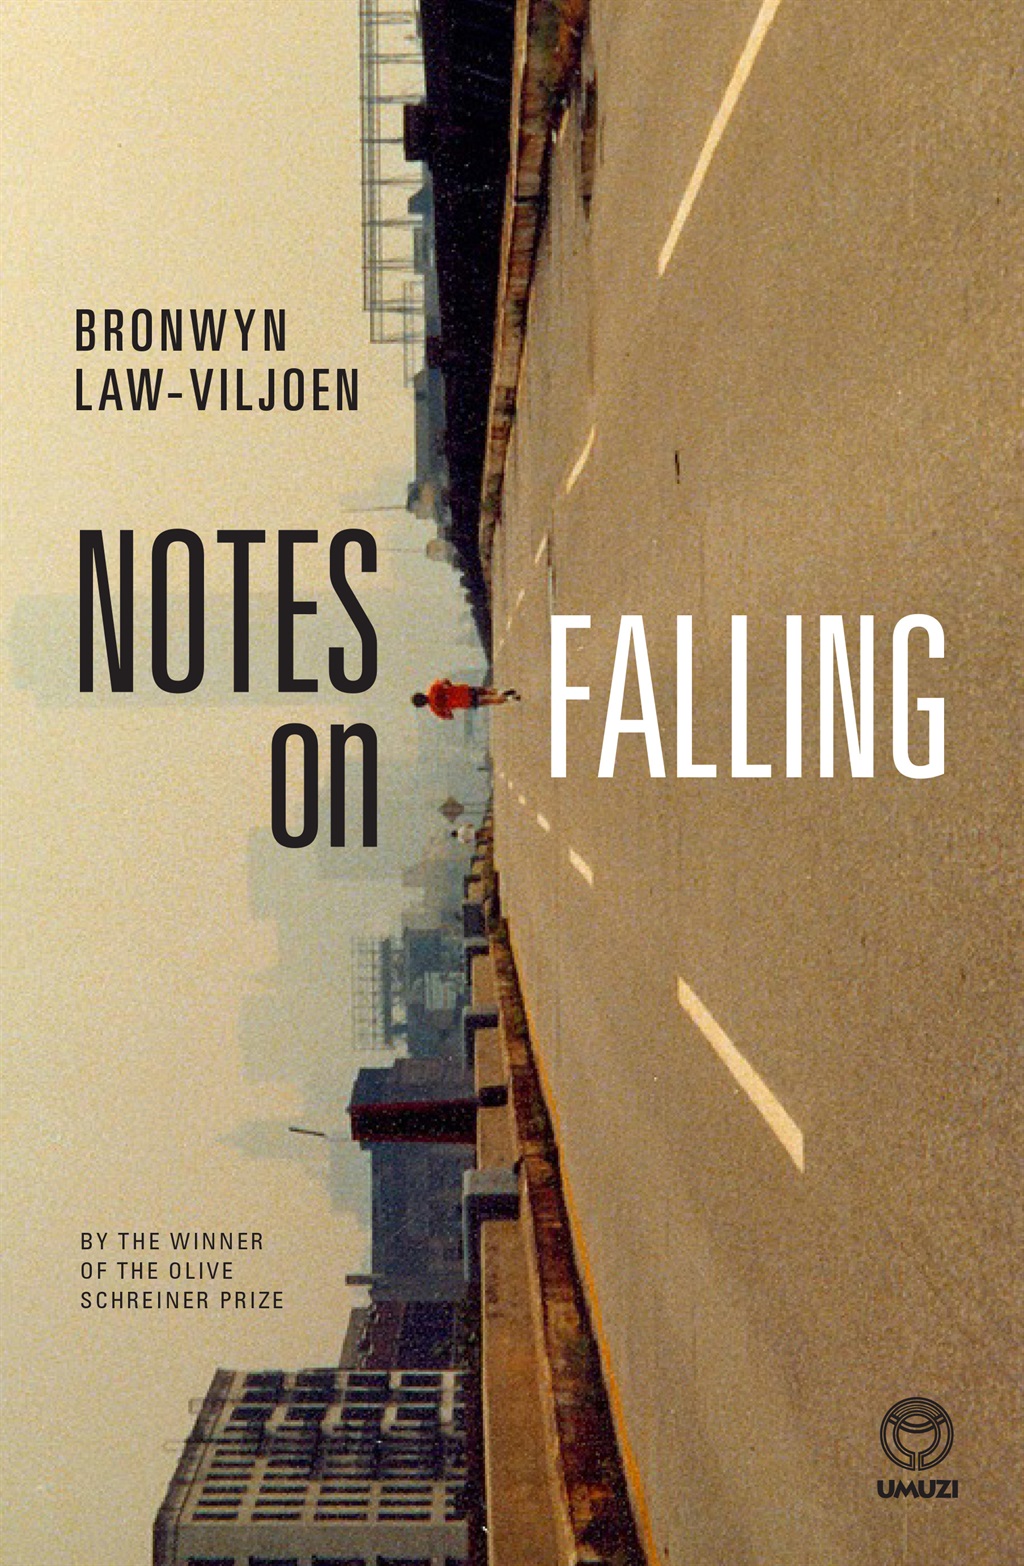 Notes on Falling by Bronwyn Law-Viljoen.